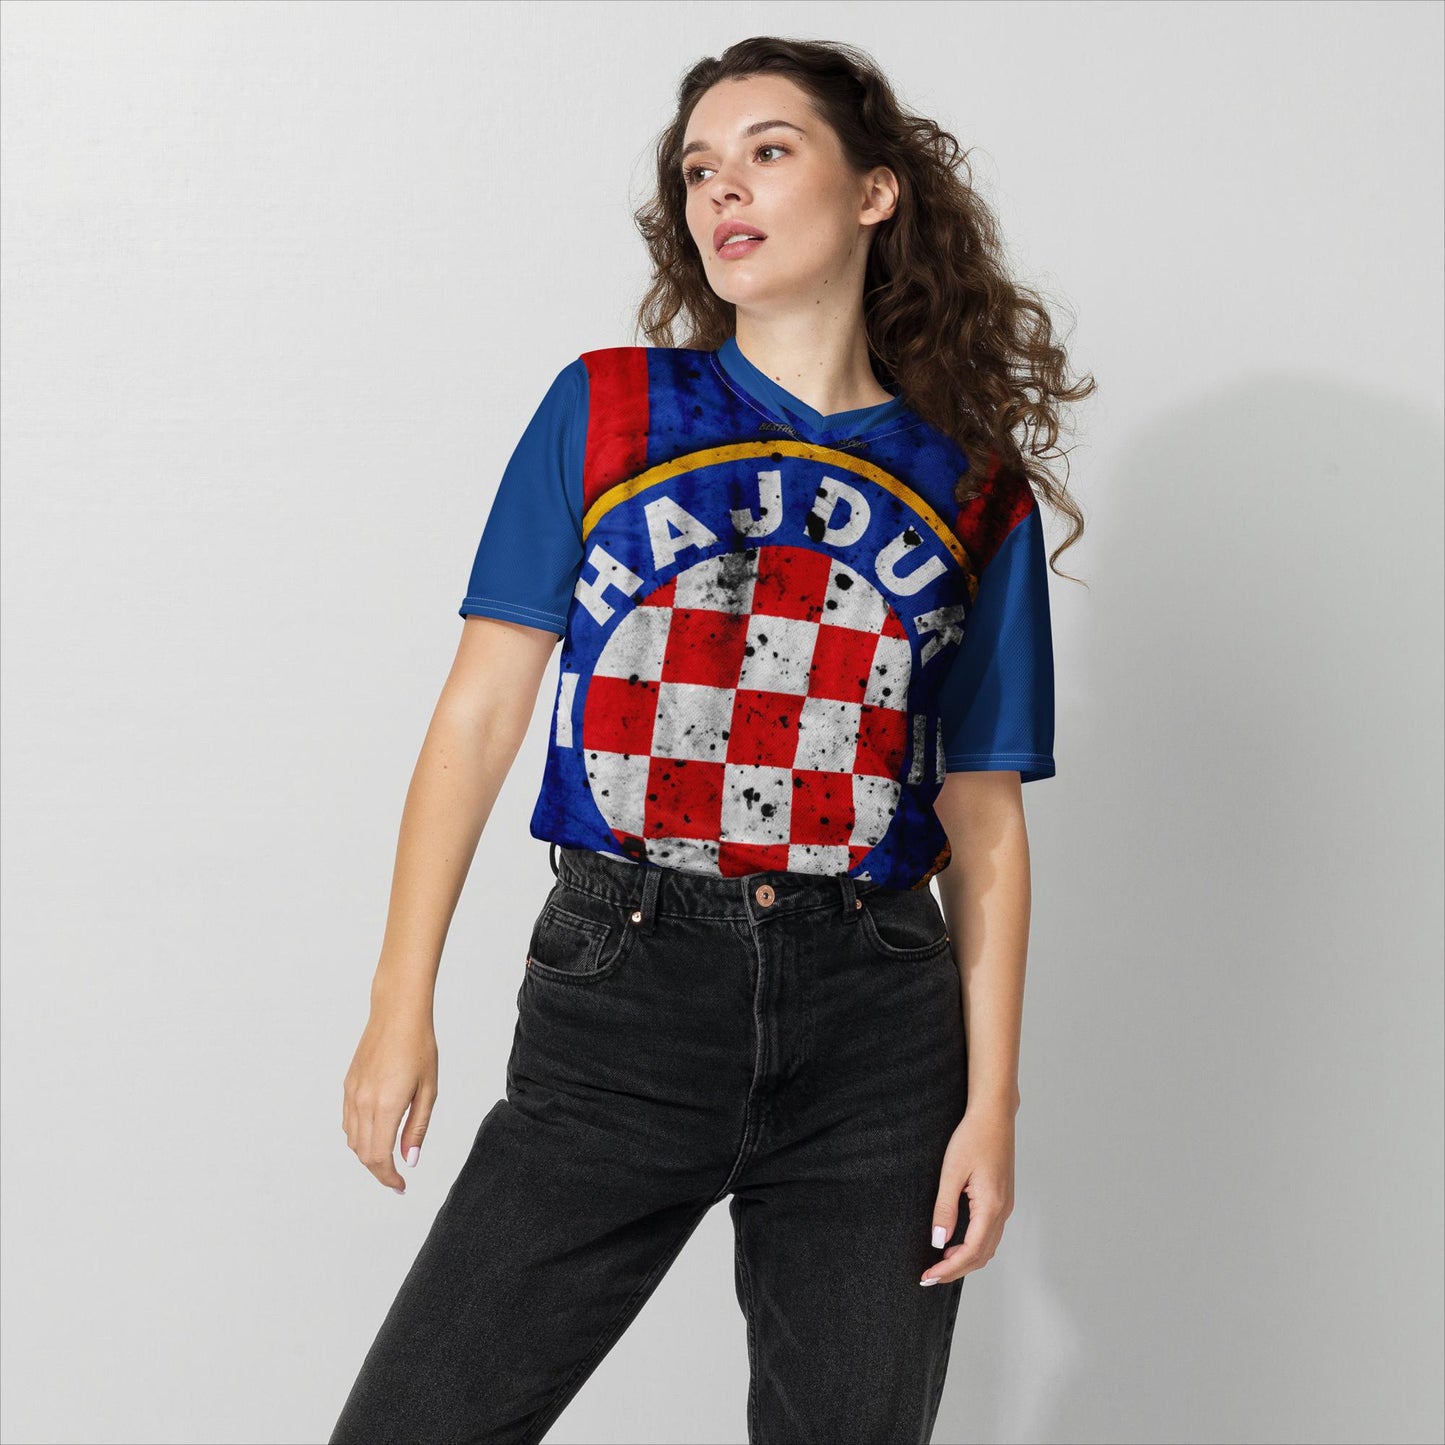 Hajduk Split Torcida Soccer Jersey